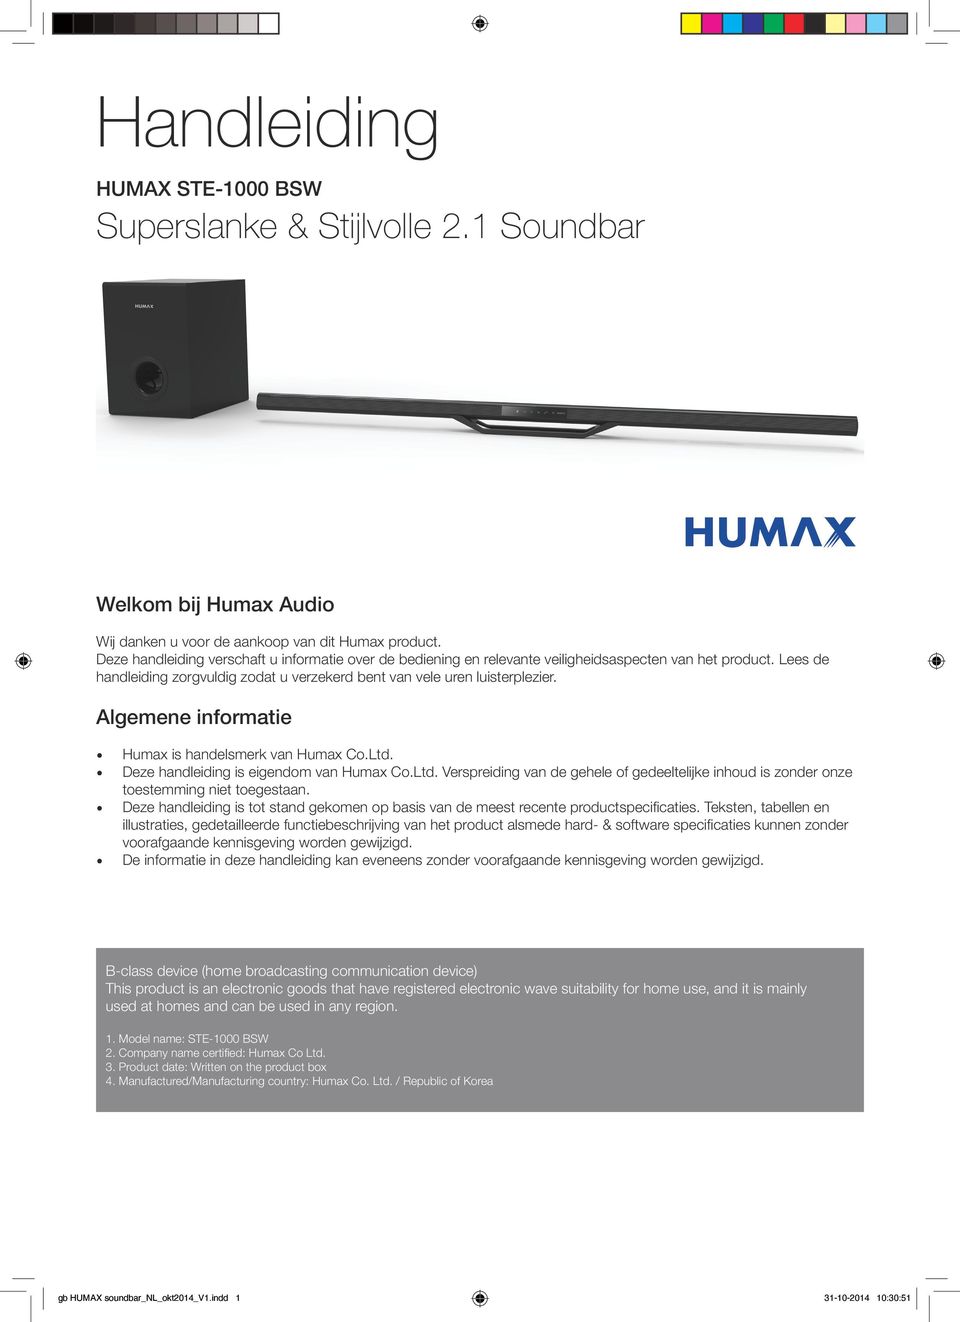 Algemene informatie Humax is handelsmerk van Humax Co.Ltd. Deze handleiding is eigendom van Humax Co.Ltd. Verspreiding van de gehele of gedeeltelijke inhoud is zonder onze toestemming niet toegestaan.